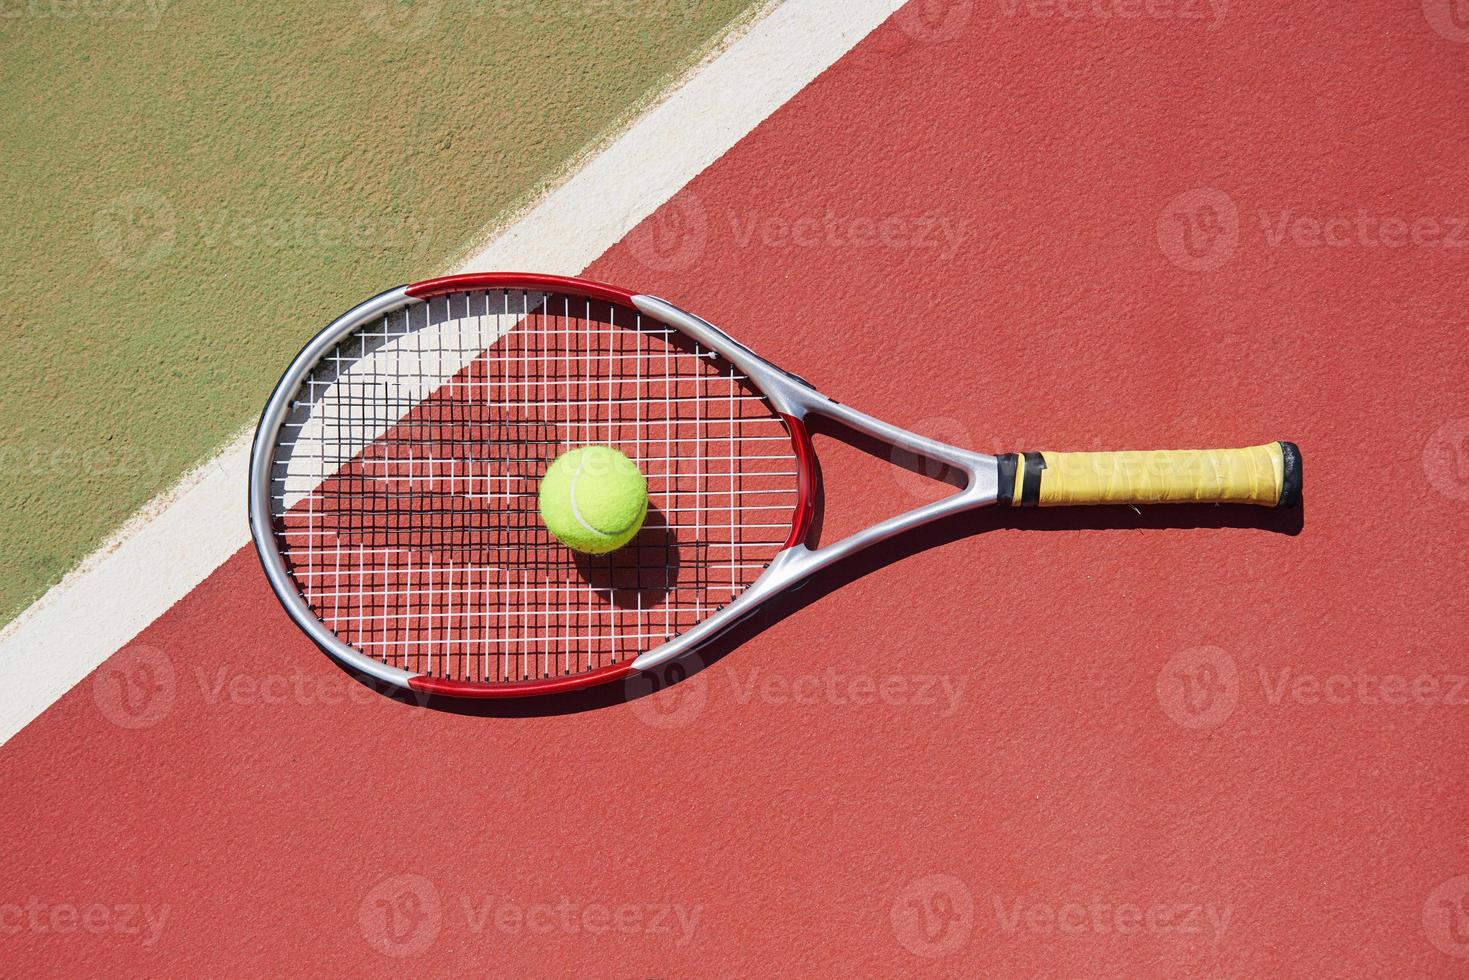 una raqueta de tenis y una pelota de tenis nueva en una cancha de tenis recién pintada. foto